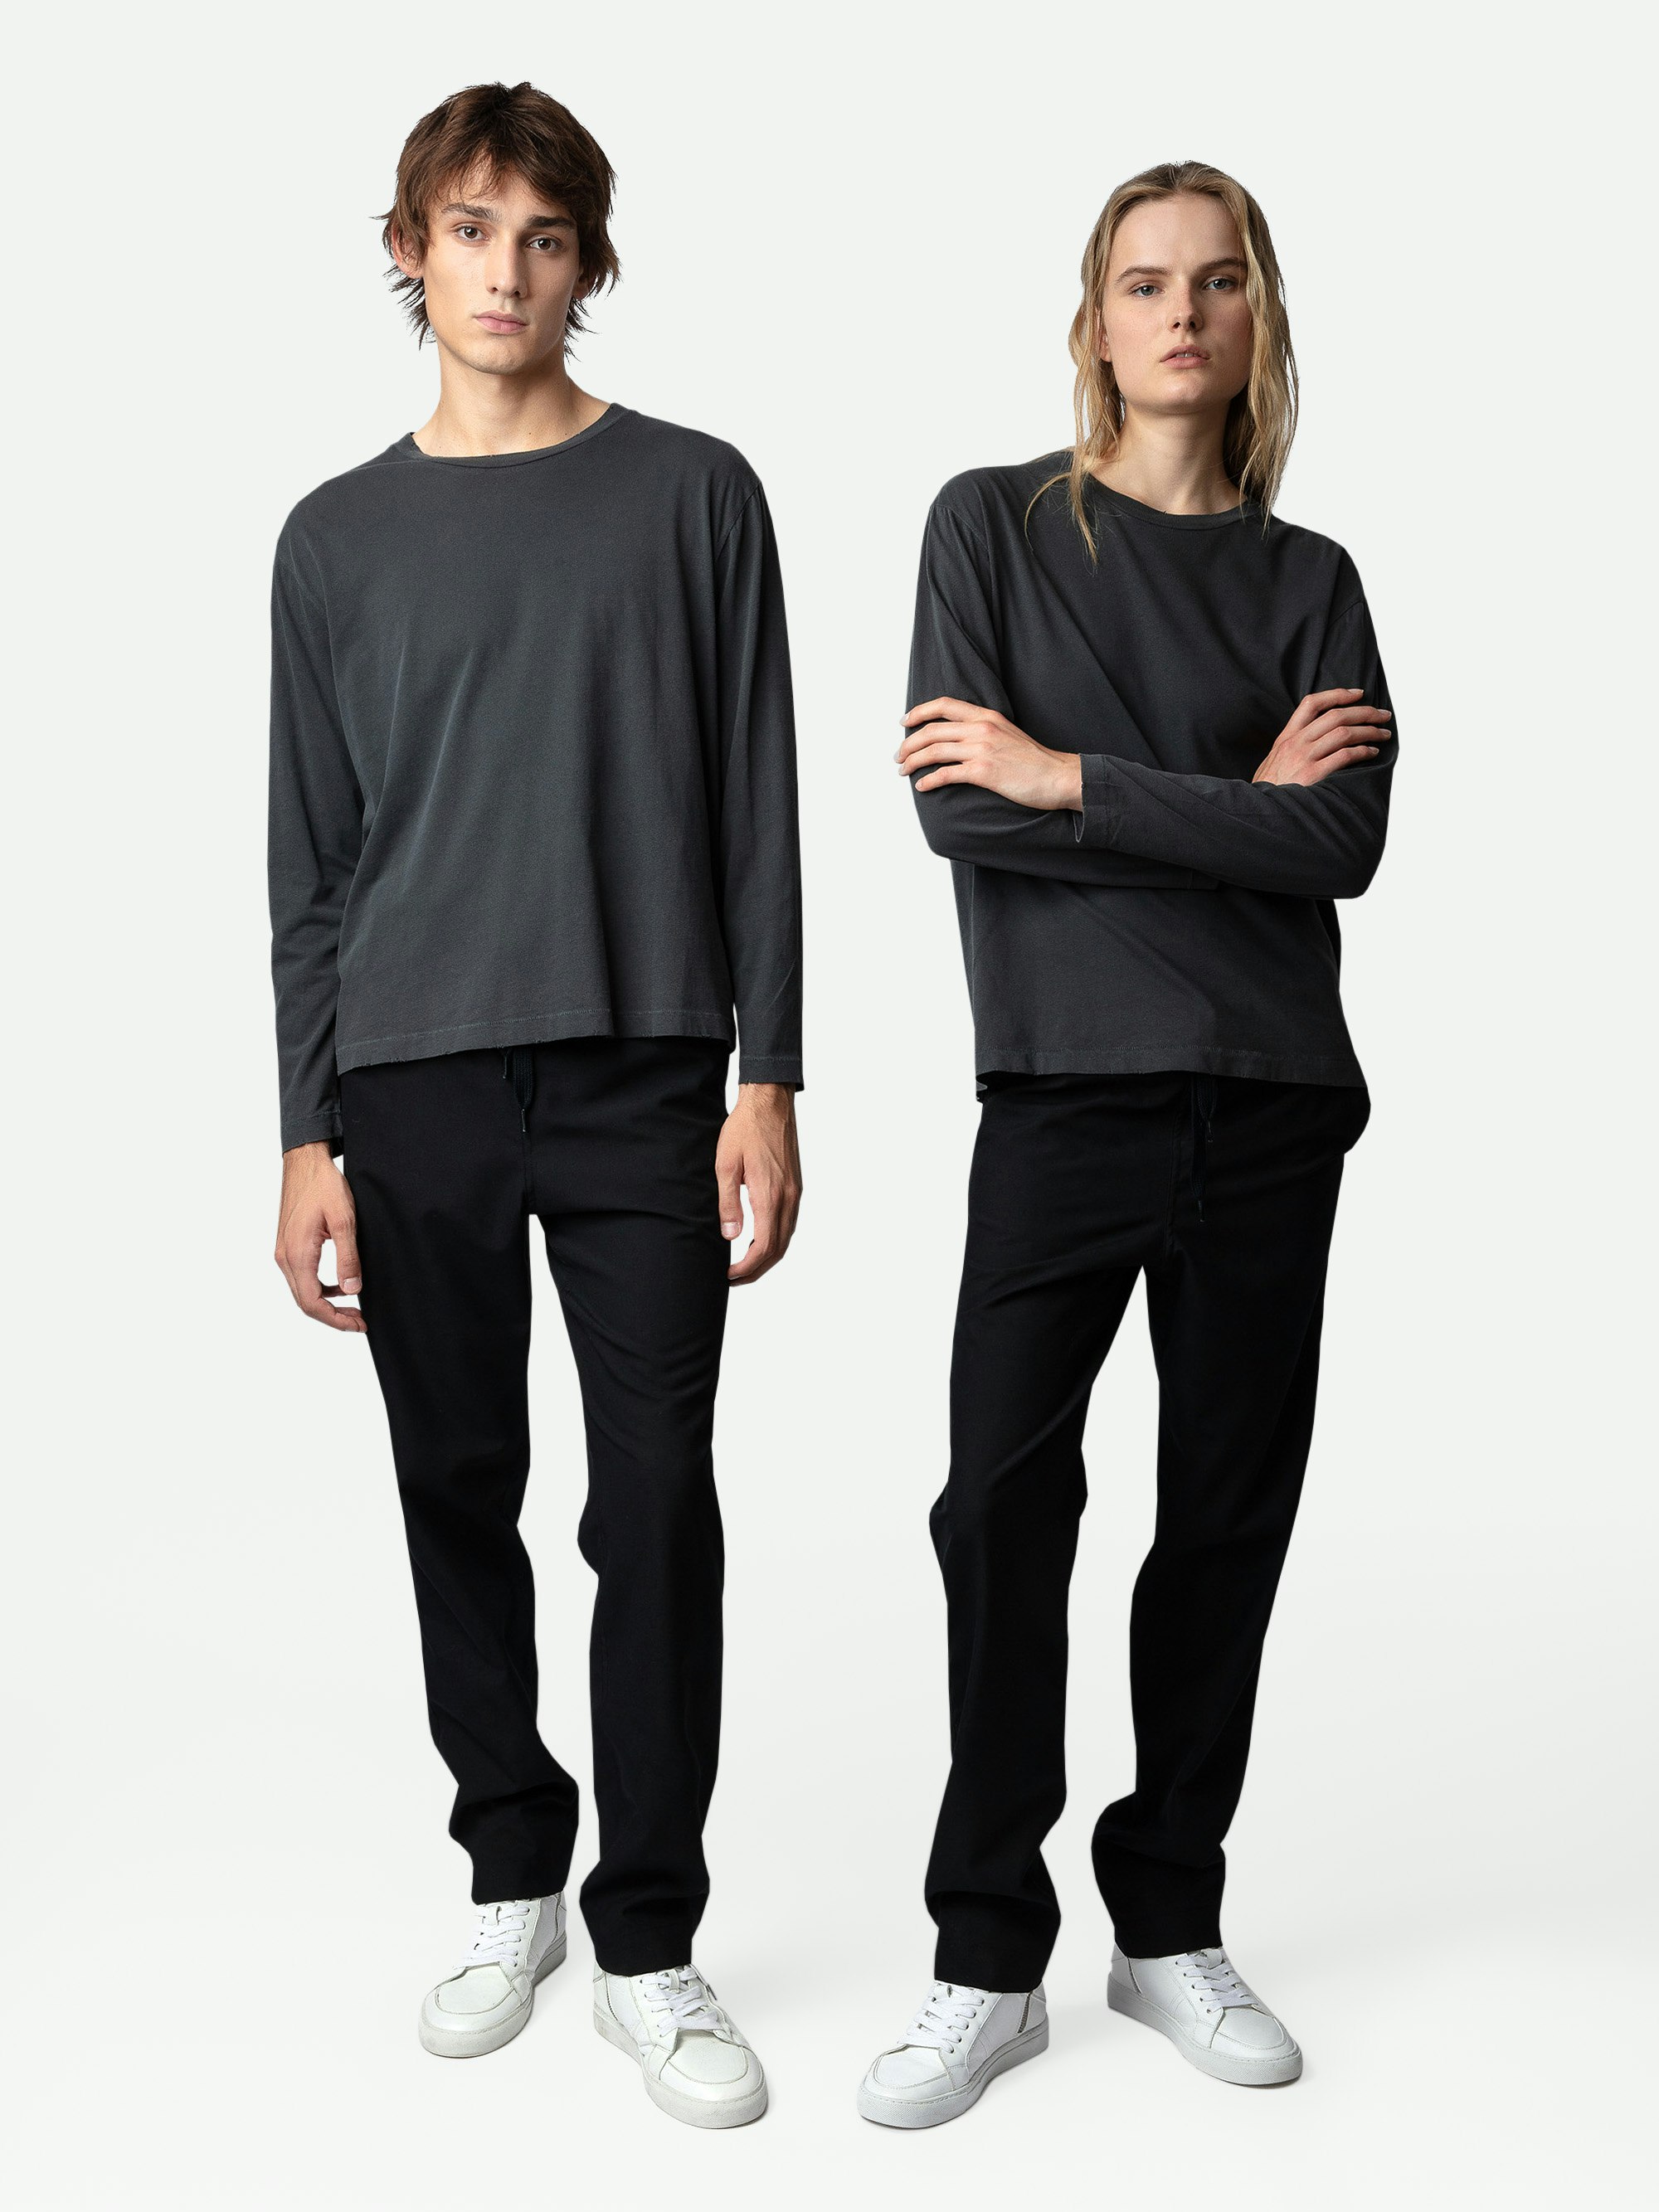 T-shirt Ellon - T-shirt à manches longues en coton gris foncé orné d'un badge blason studio au dos unisexe.